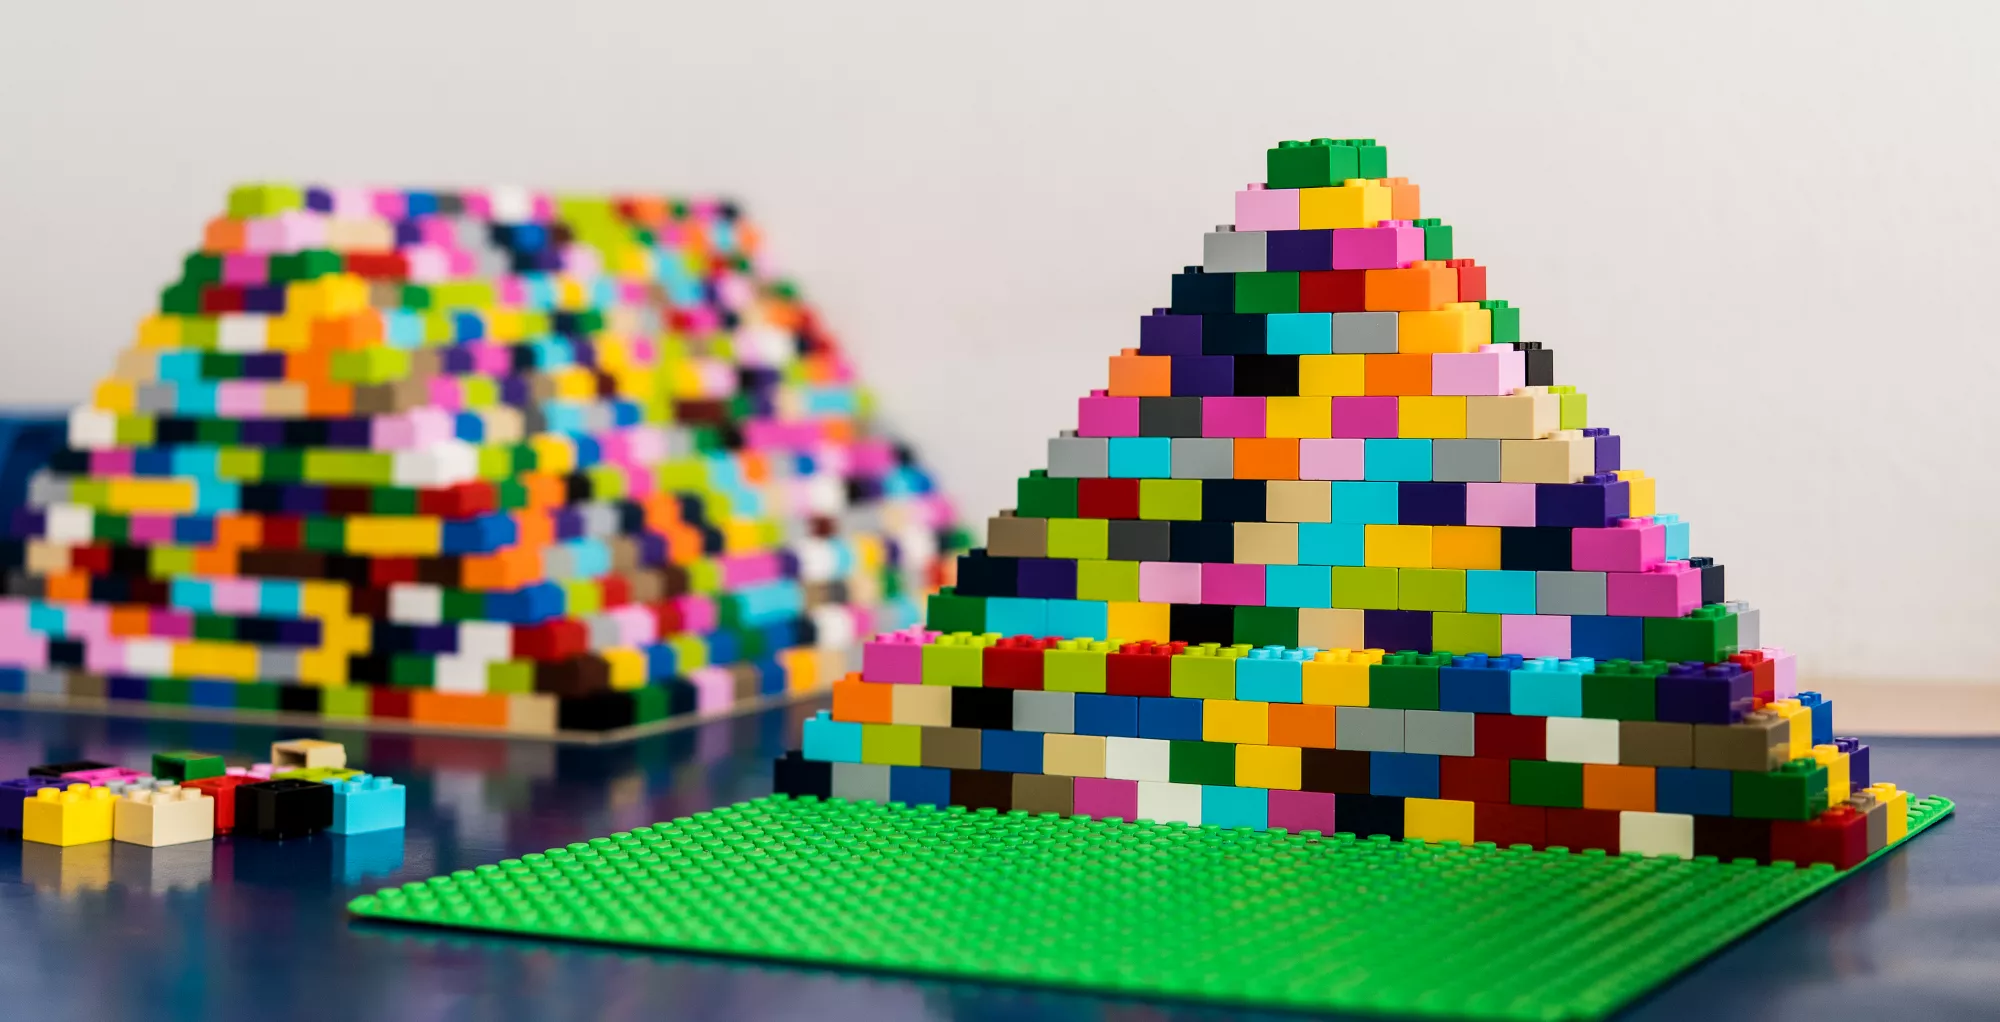 Bild zeigt bunte Legosteine, die zu einer Pyramide gebaut wurden